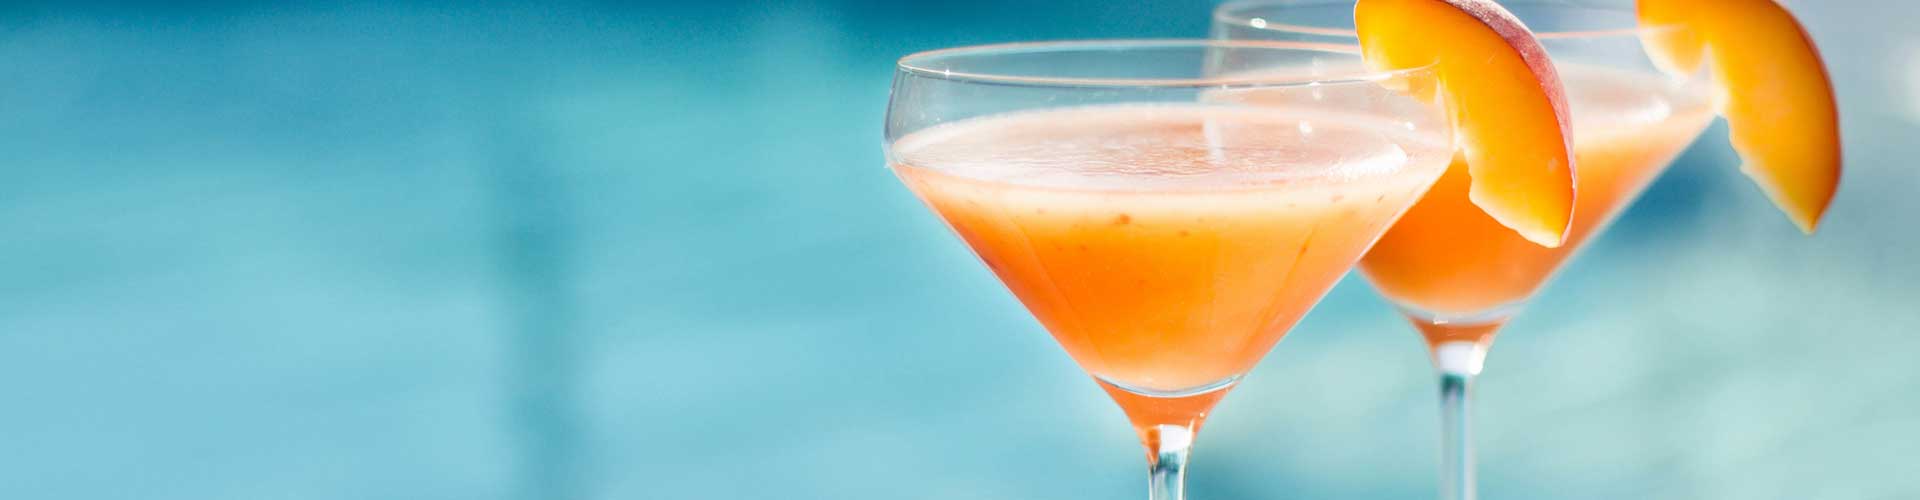 Peach Melbarite Cocktail